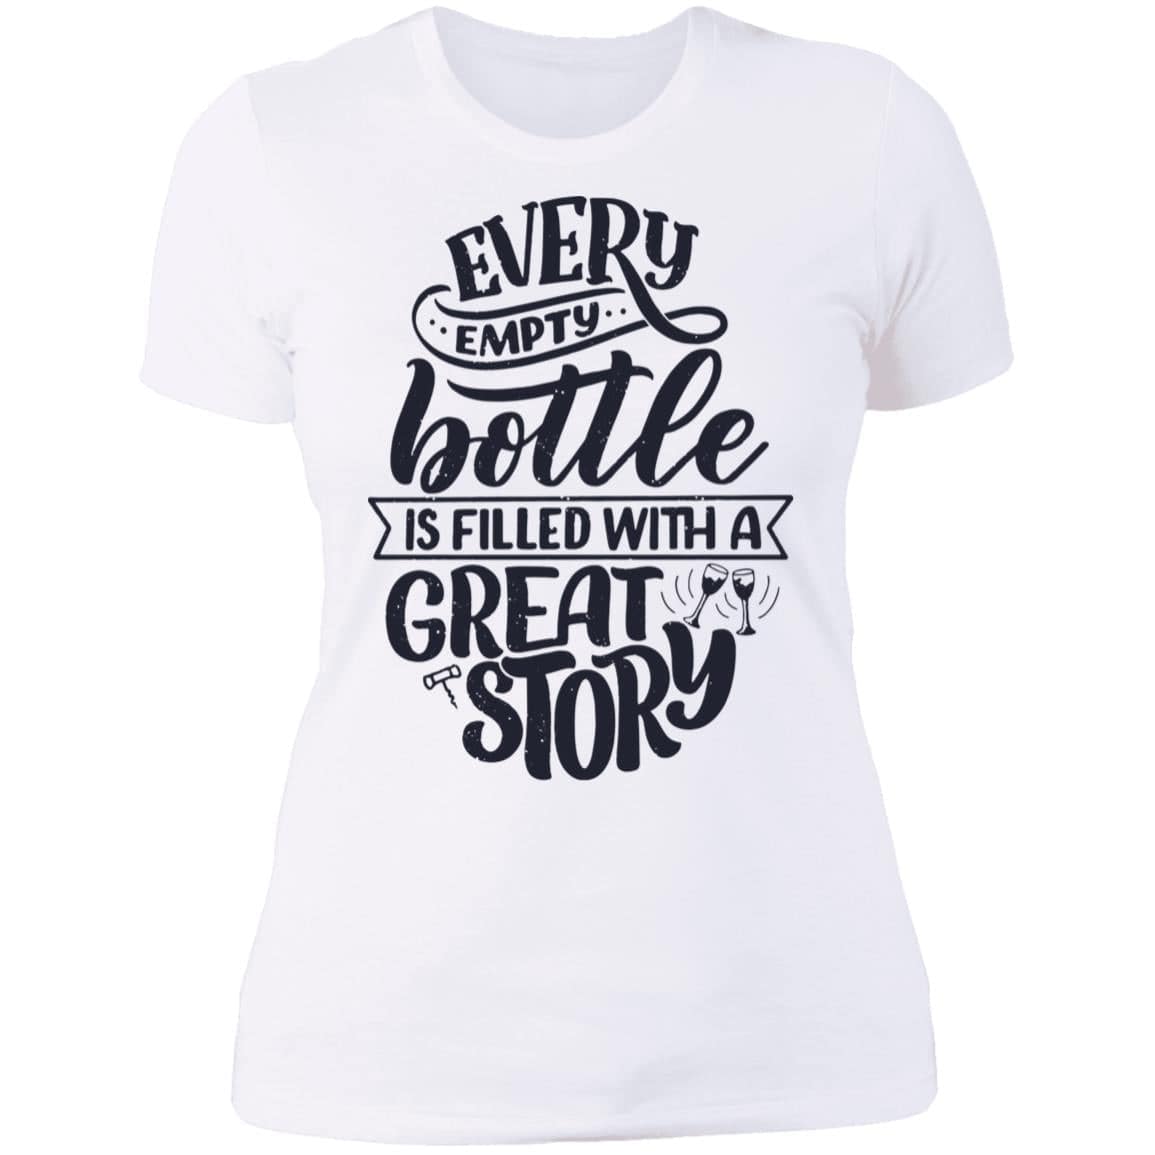 Wine makes Great Stories Ladies' Boyfriend T-Shirt - Expressive DeZien 